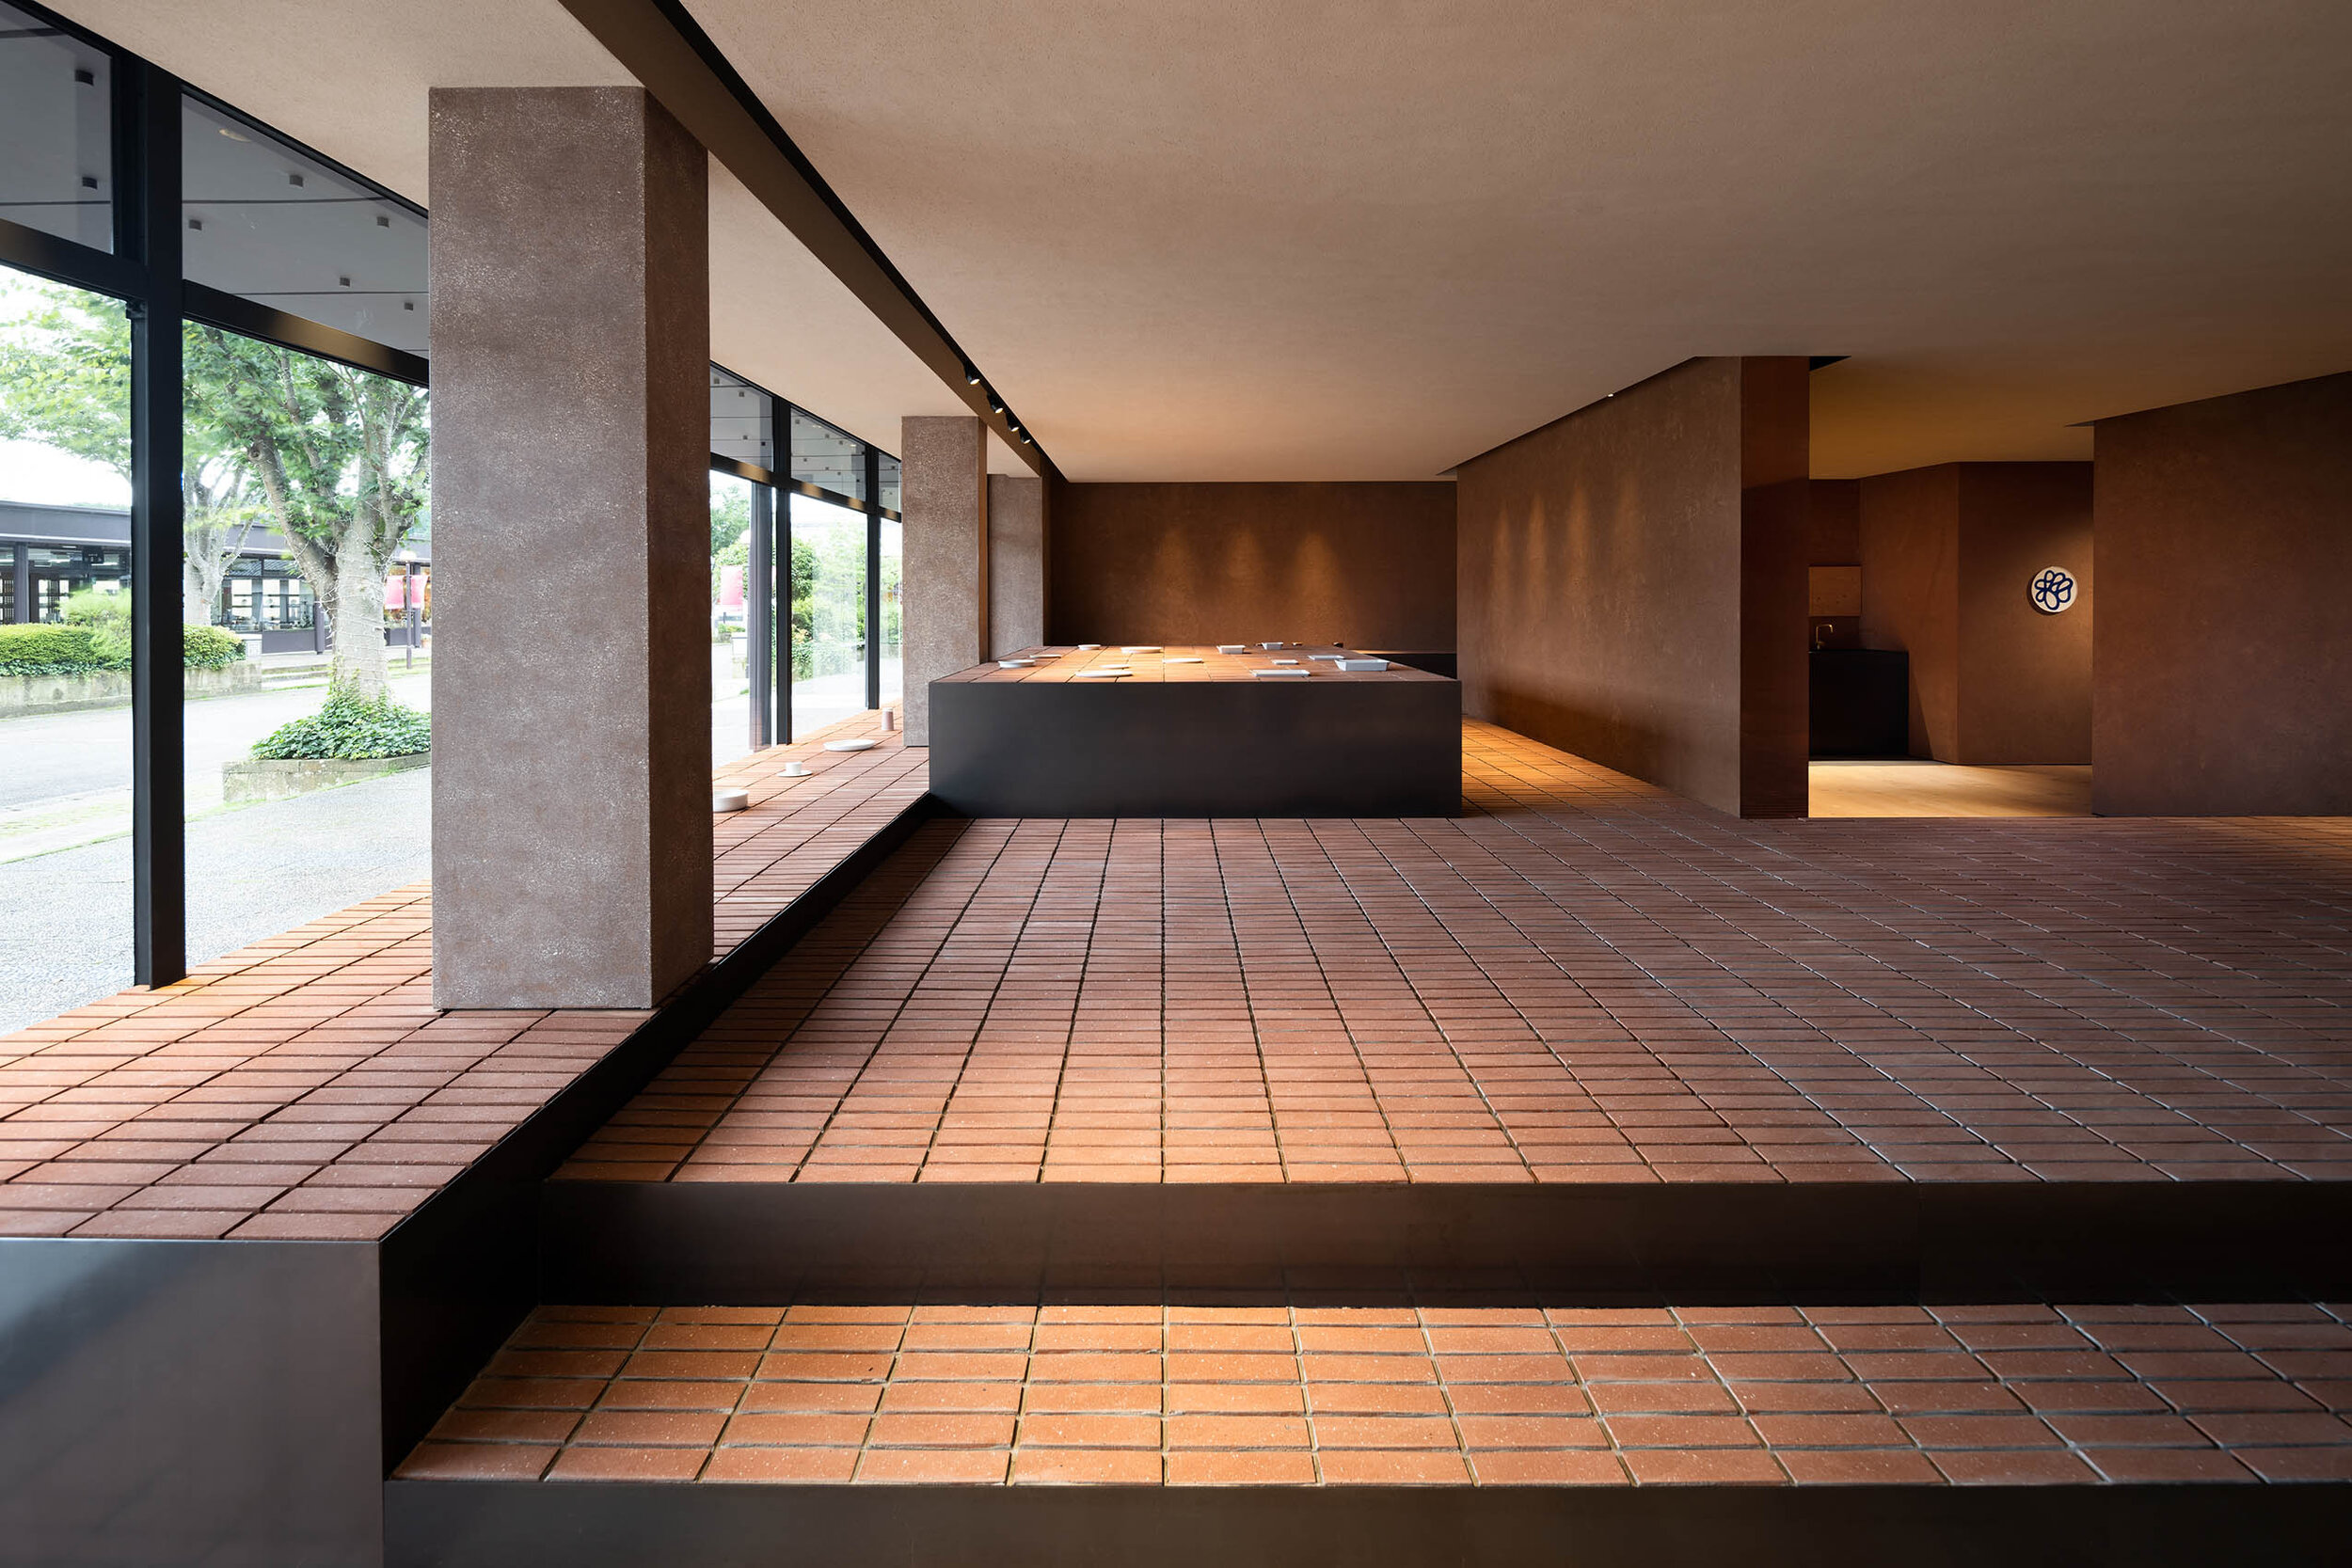  Teruhiro Yanagihara Studio has designed calm interior for 1616/arita japan showroom in Arita, Japan. 